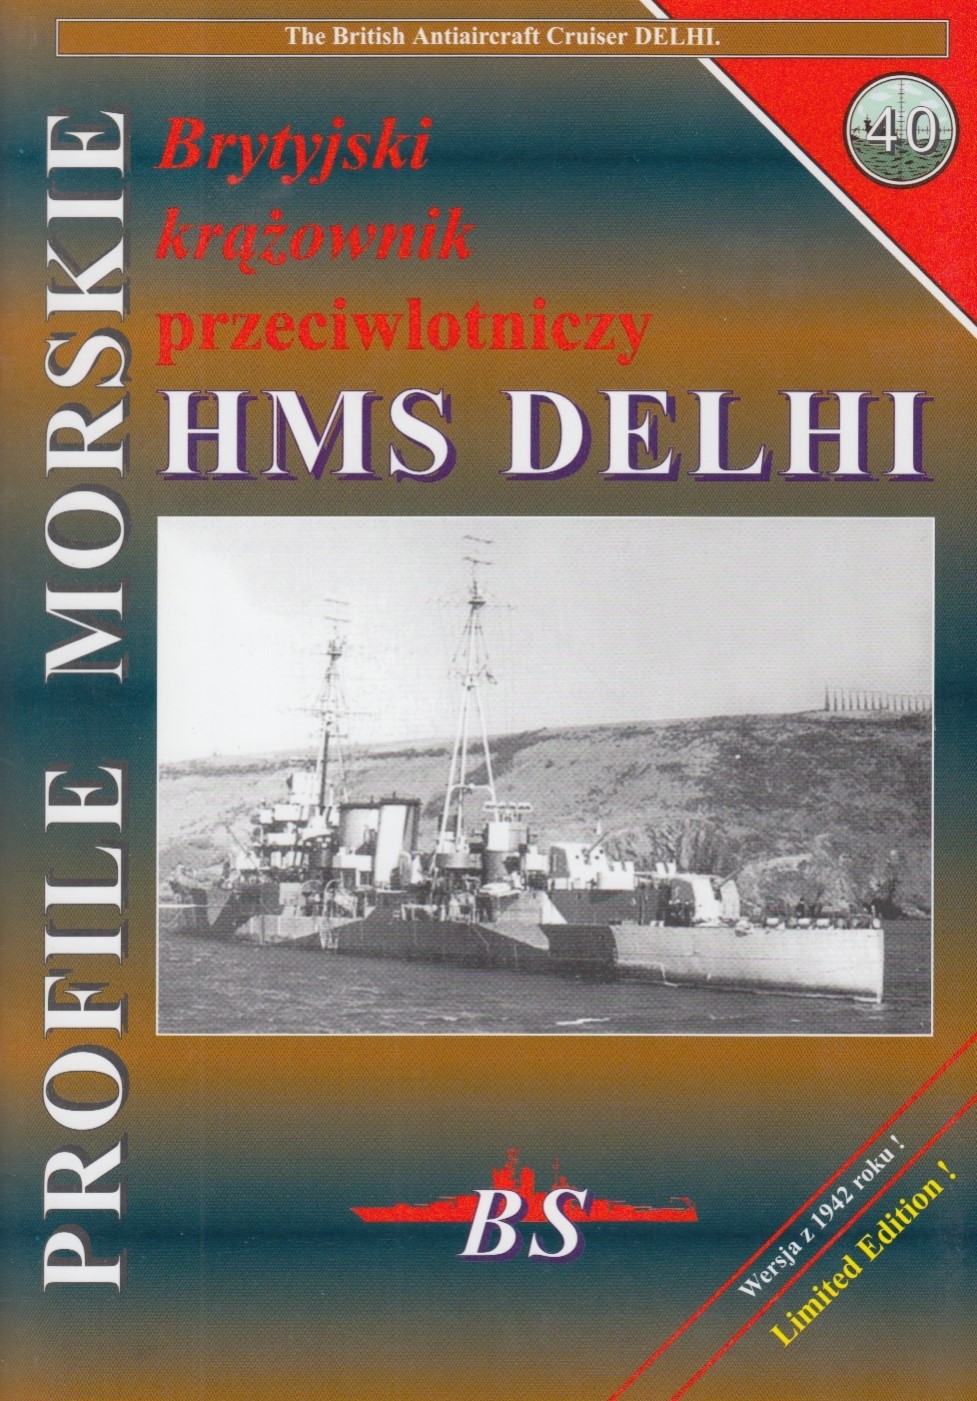 AA cruiser HMS DELHI